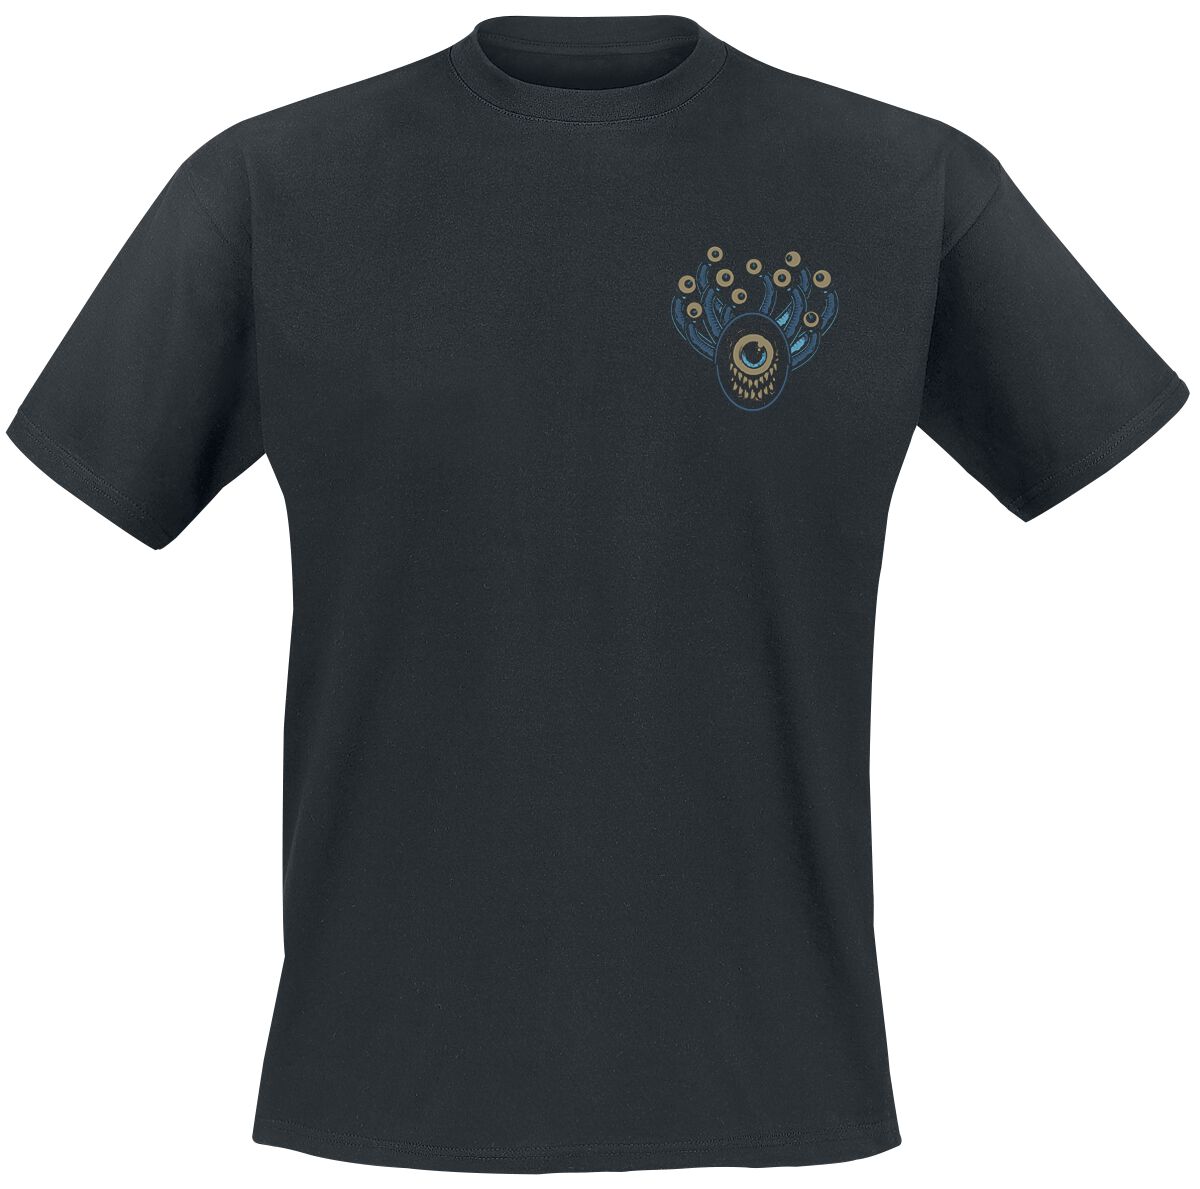 Dungeons and Dragons - Gaming T-Shirt - Hydro74 - Beholder - S bis XXL - für Männer - Größe L - schwarz  - EMP exklusives Merchandise!